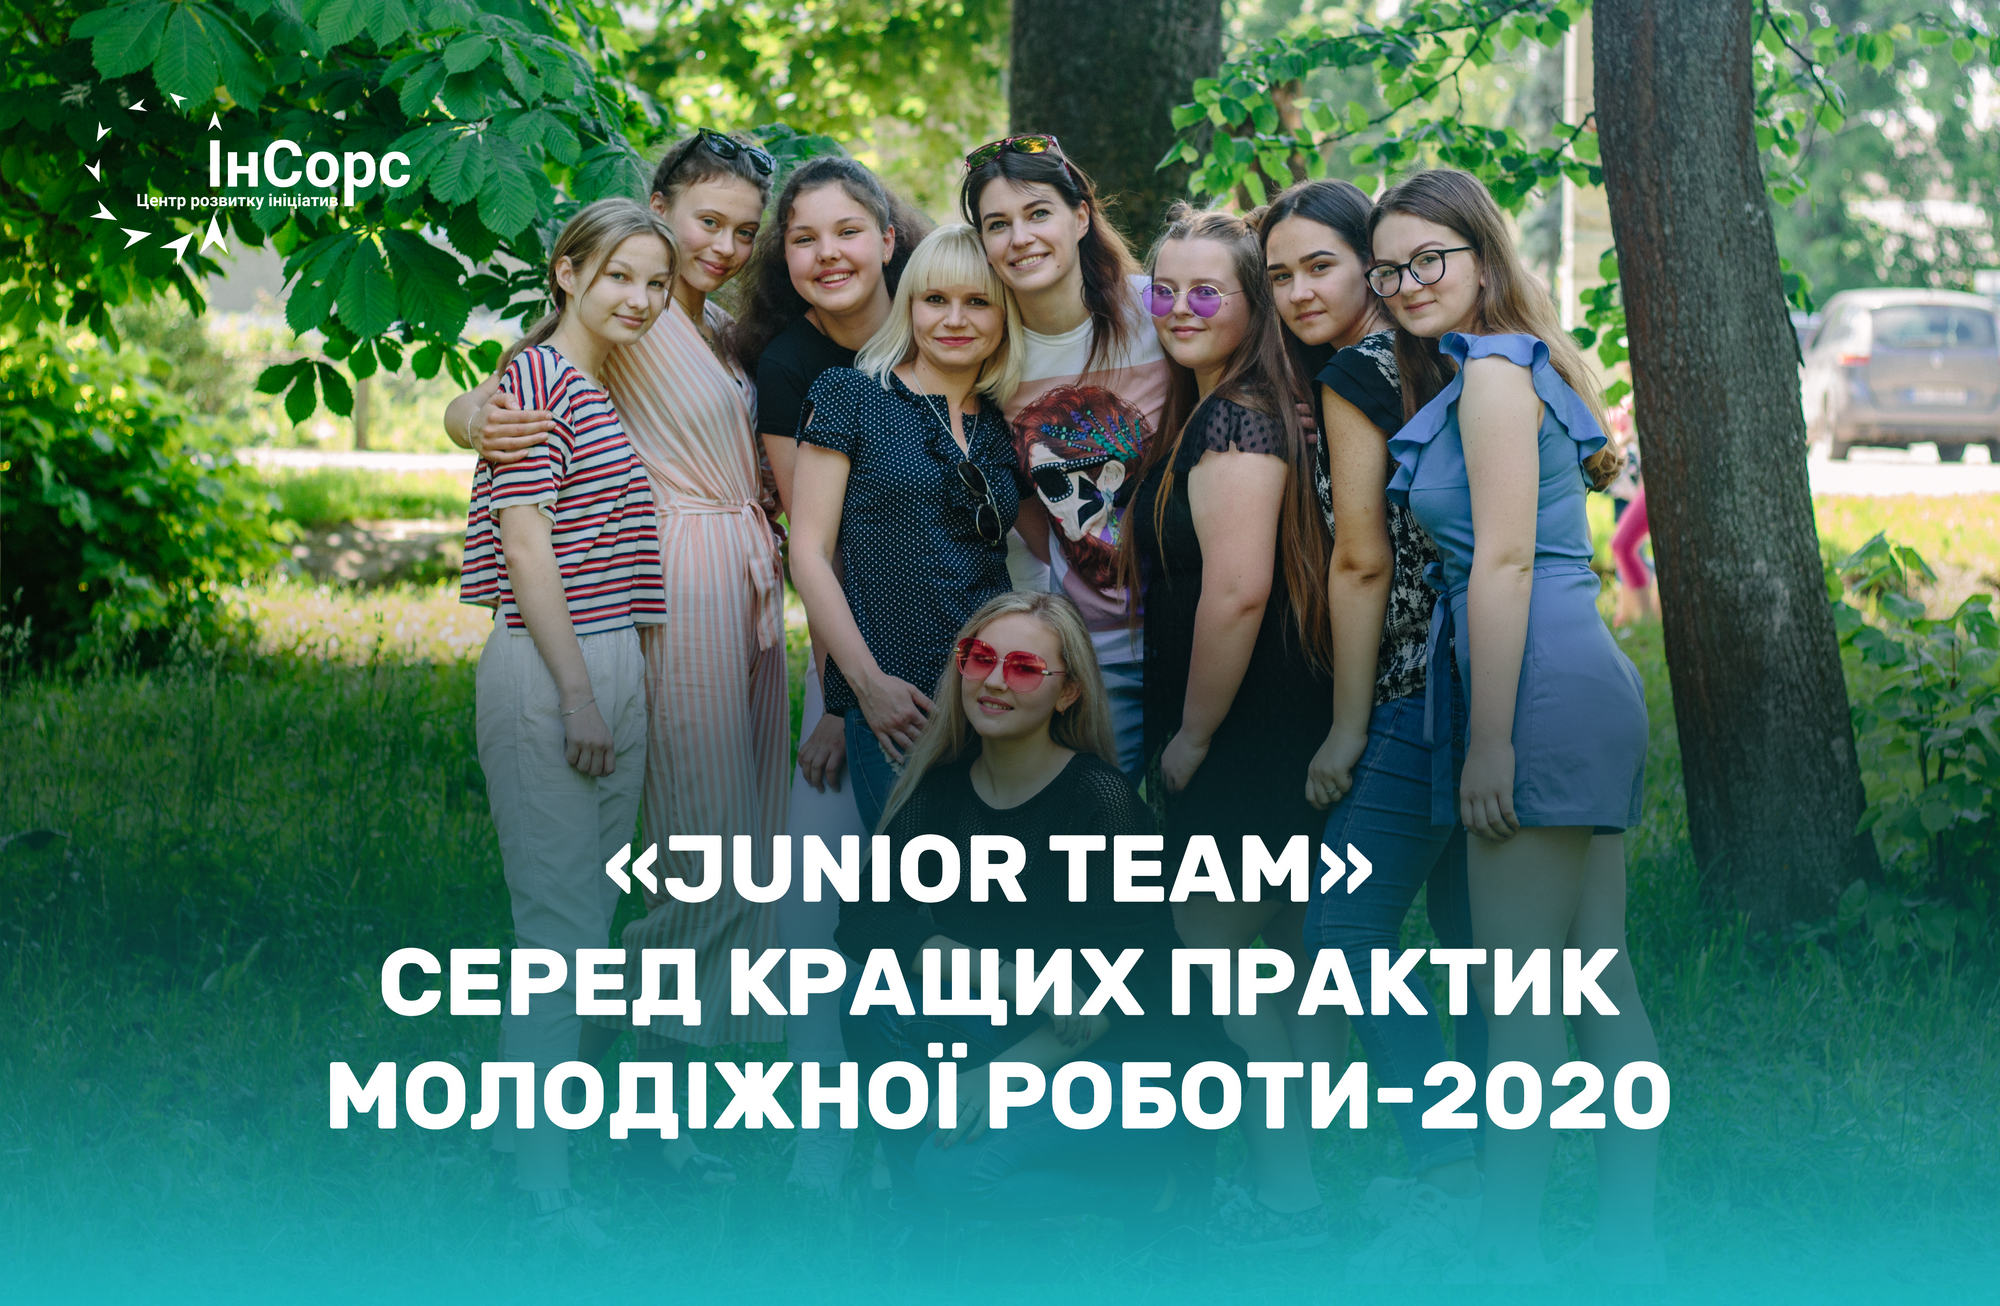 «Junior team» серед кращих практик молодіжної роботи-2020